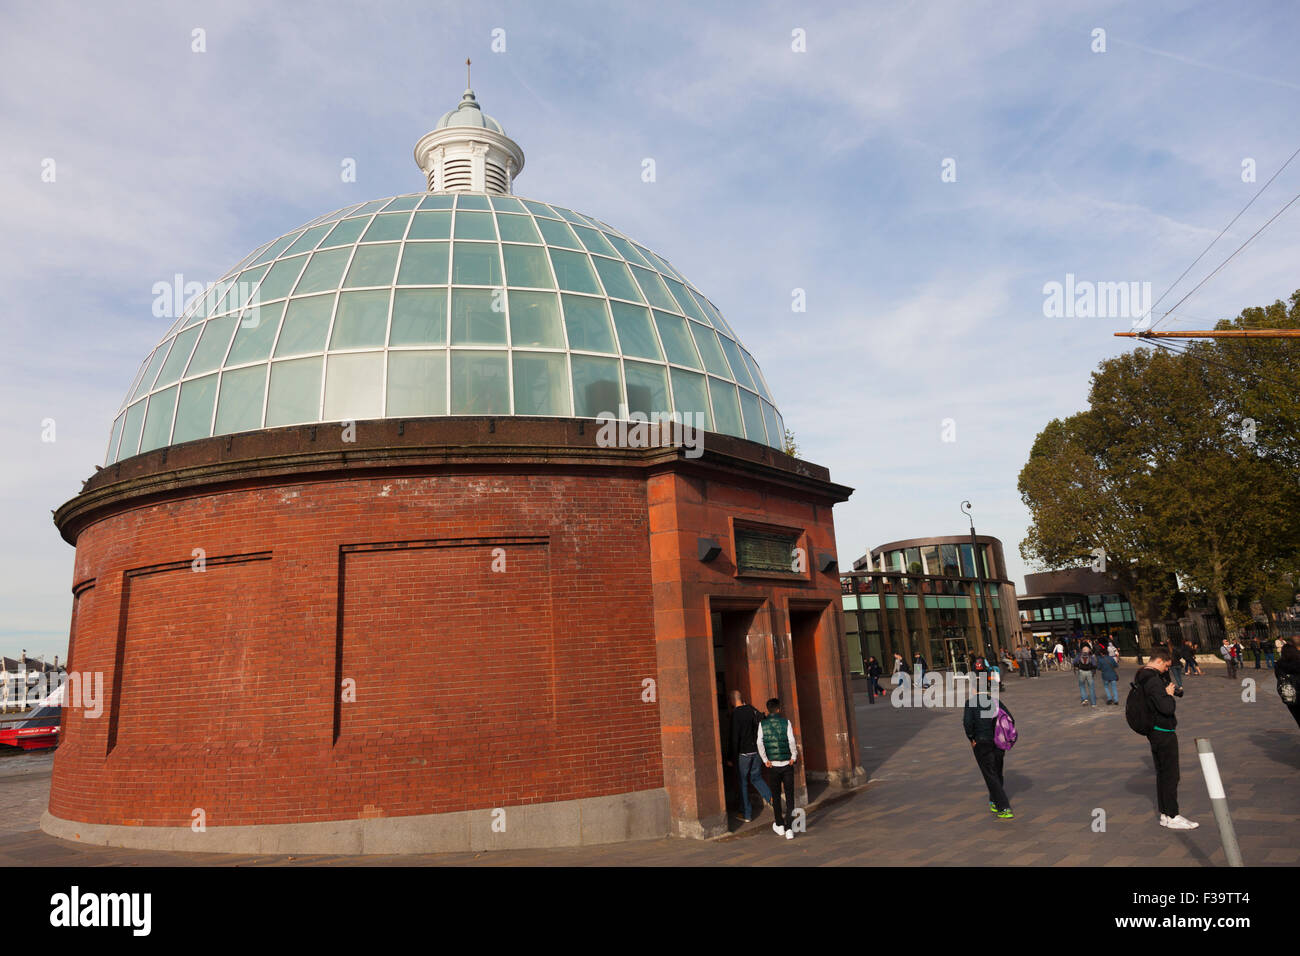 Ingresso a cupola a tunnel pedonale tra Greenwich e Isle of Dogs, London, Regno Unito Foto Stock